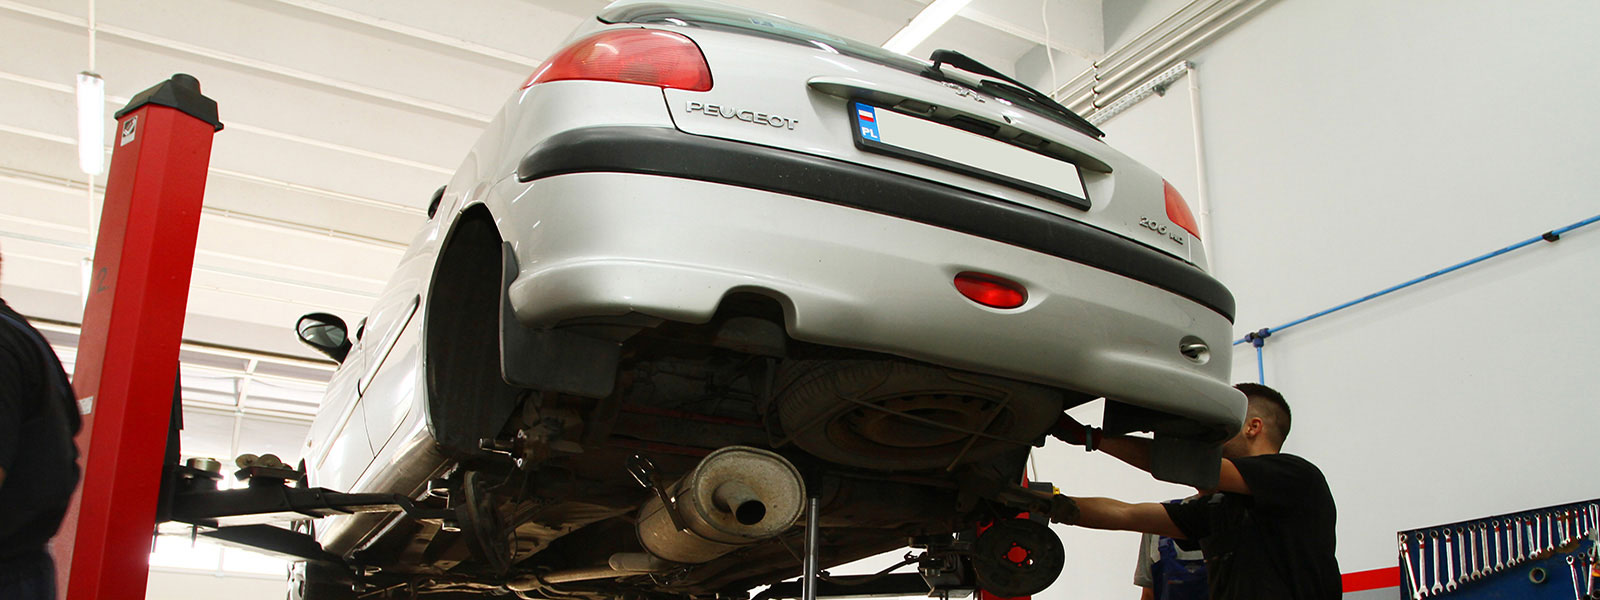 La Peugeot 206 et son train arrière – Deterioration, les symptômes ...